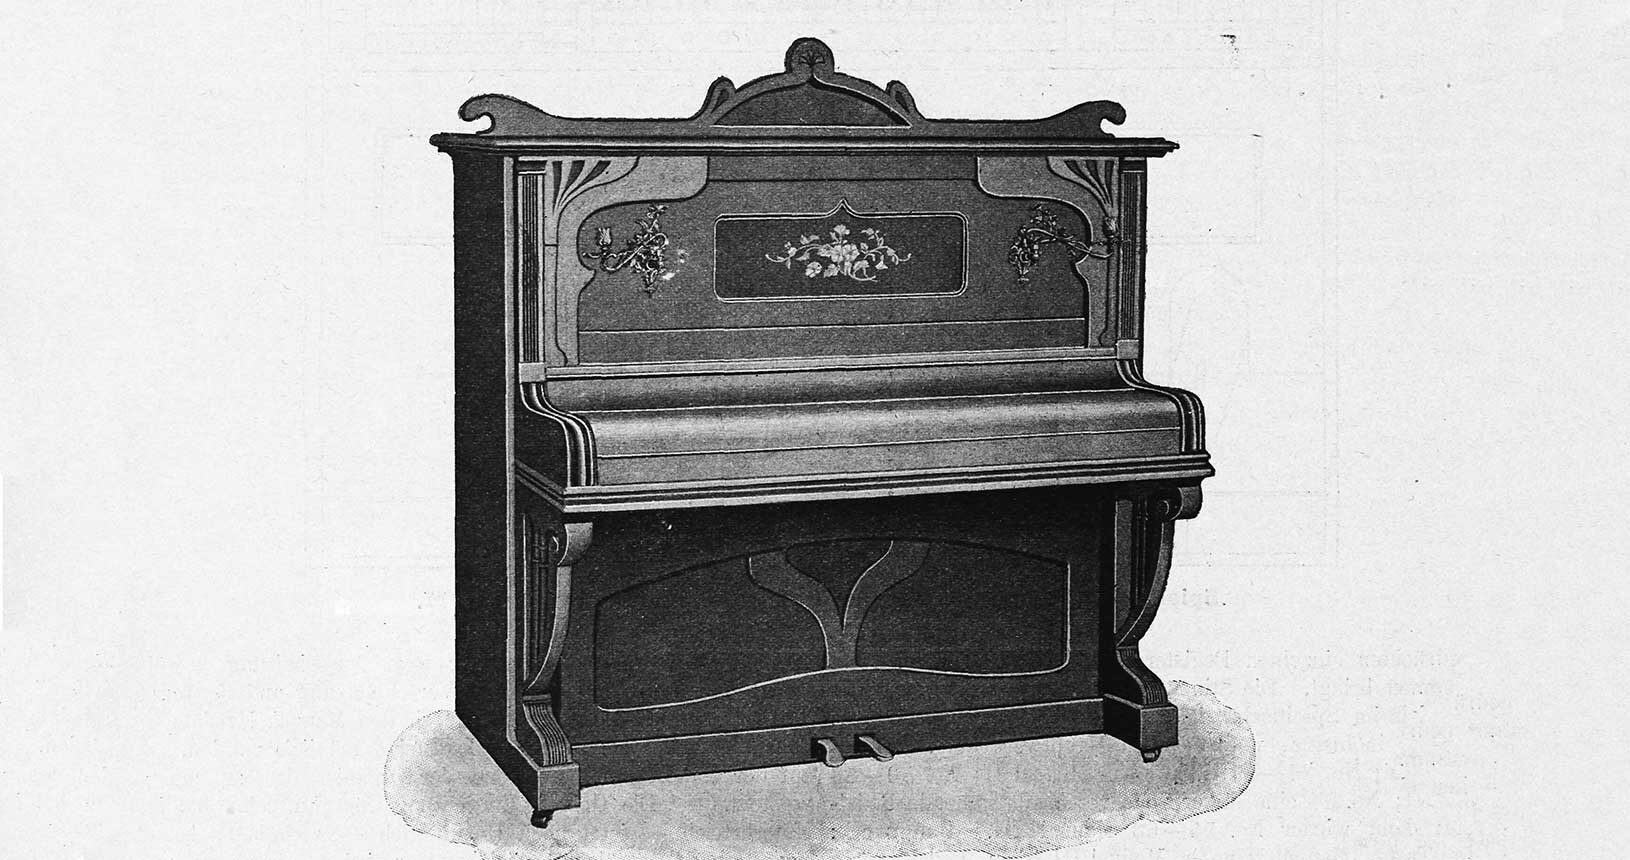 Illustration Zeitschrift für Instrumentenbau 1899/1900 - Public Domain